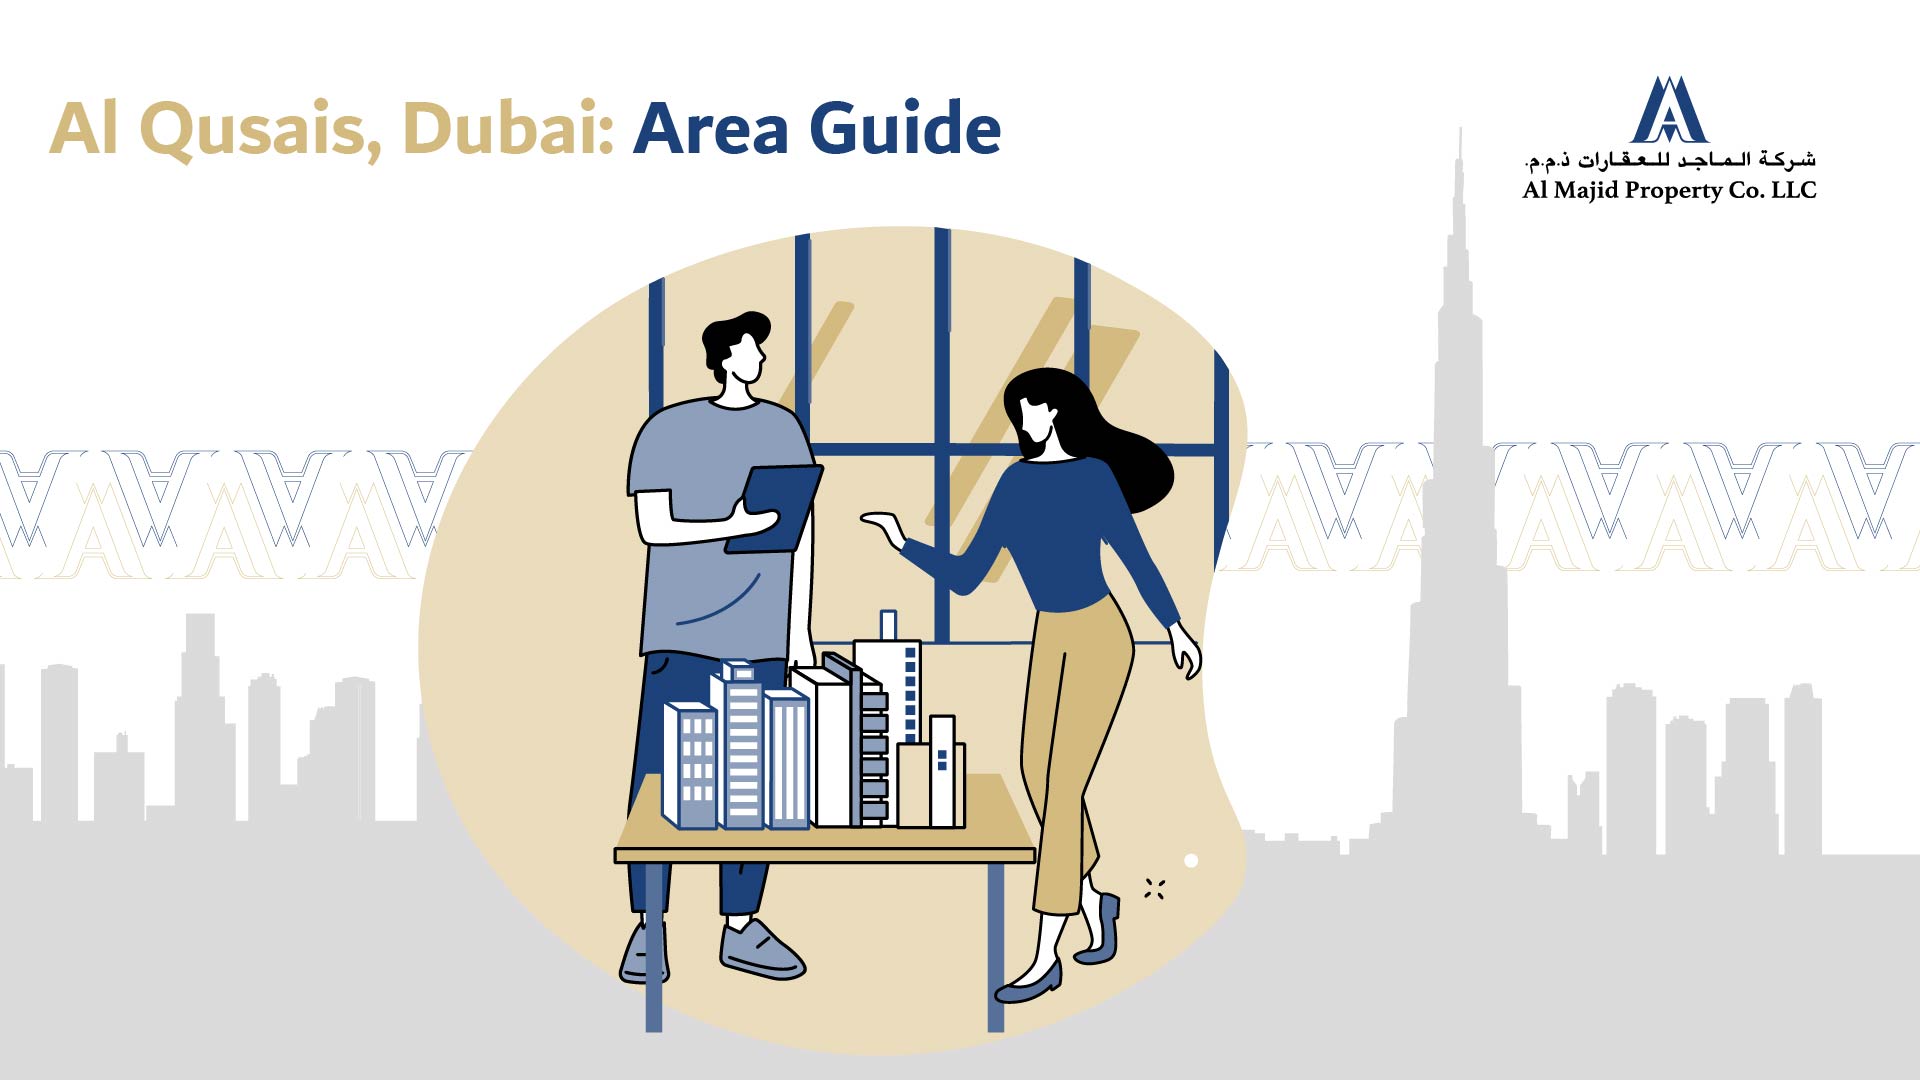 Al Qusais, Dubai: Area Guide